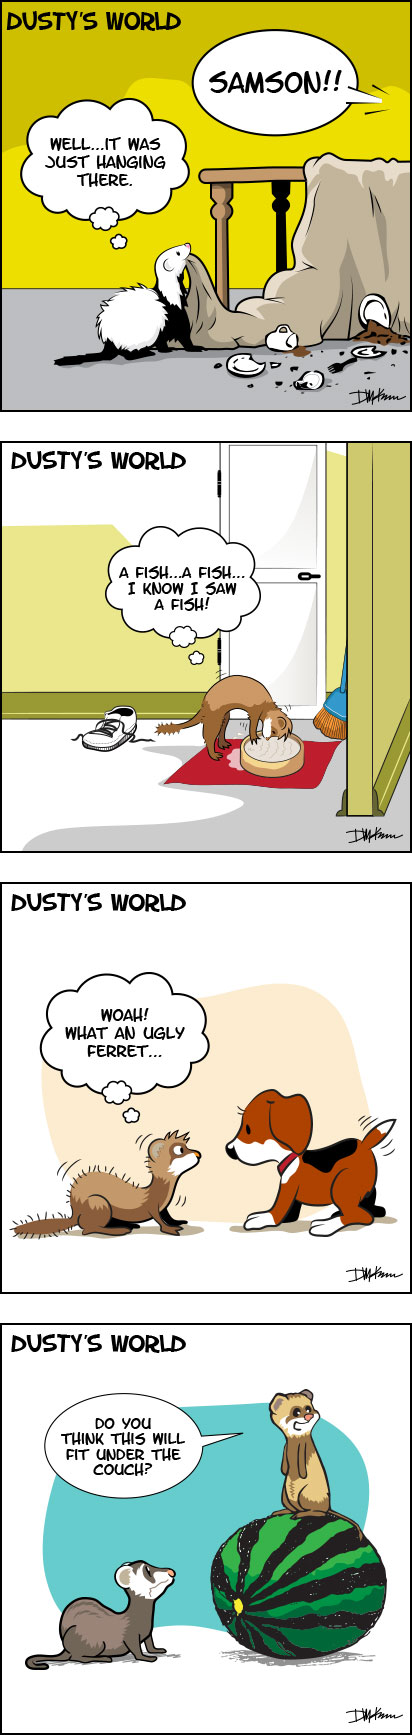 Dusty's World by dcloud on DeviantArt